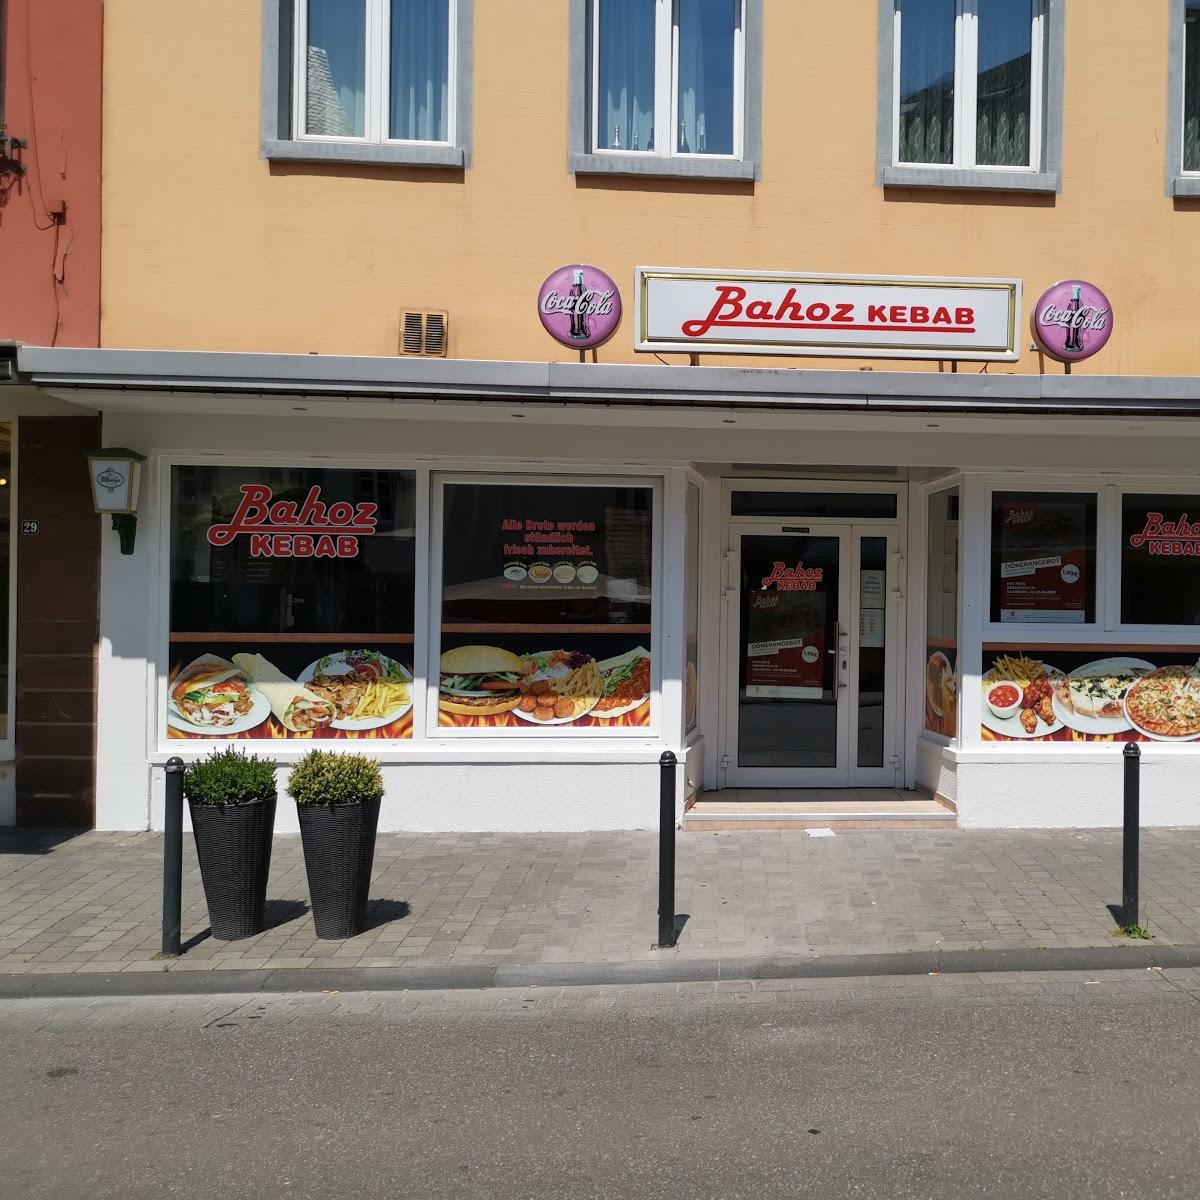 Restaurant "Bahoz Kebab" in  Saarburg